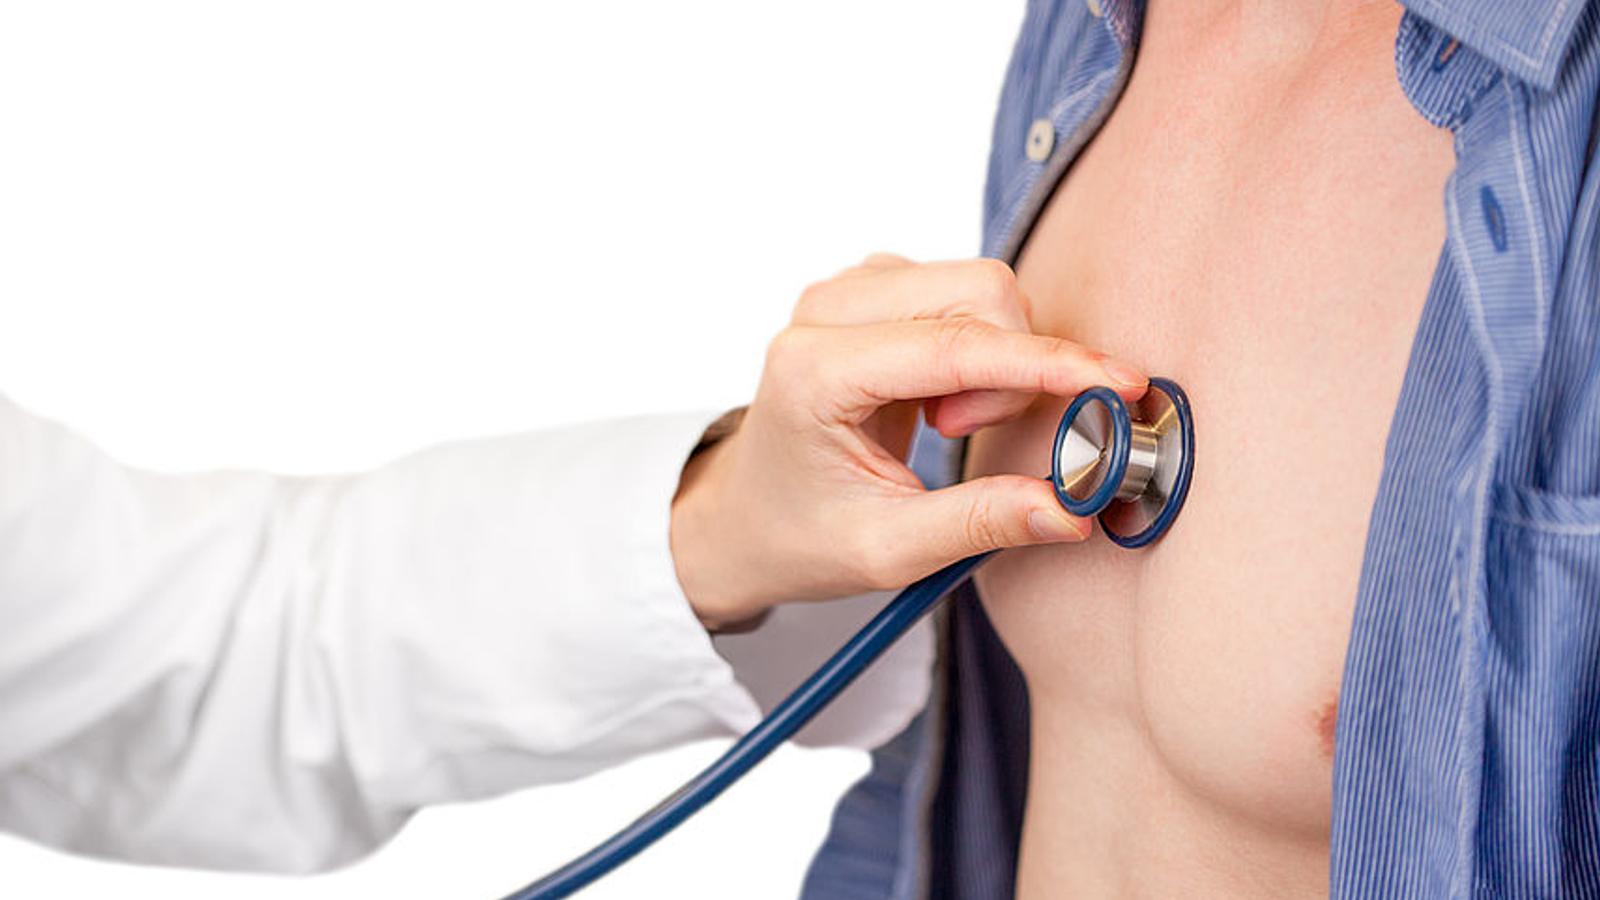 Arzt hört eine Männerbrust mit dem Stethoskop ab